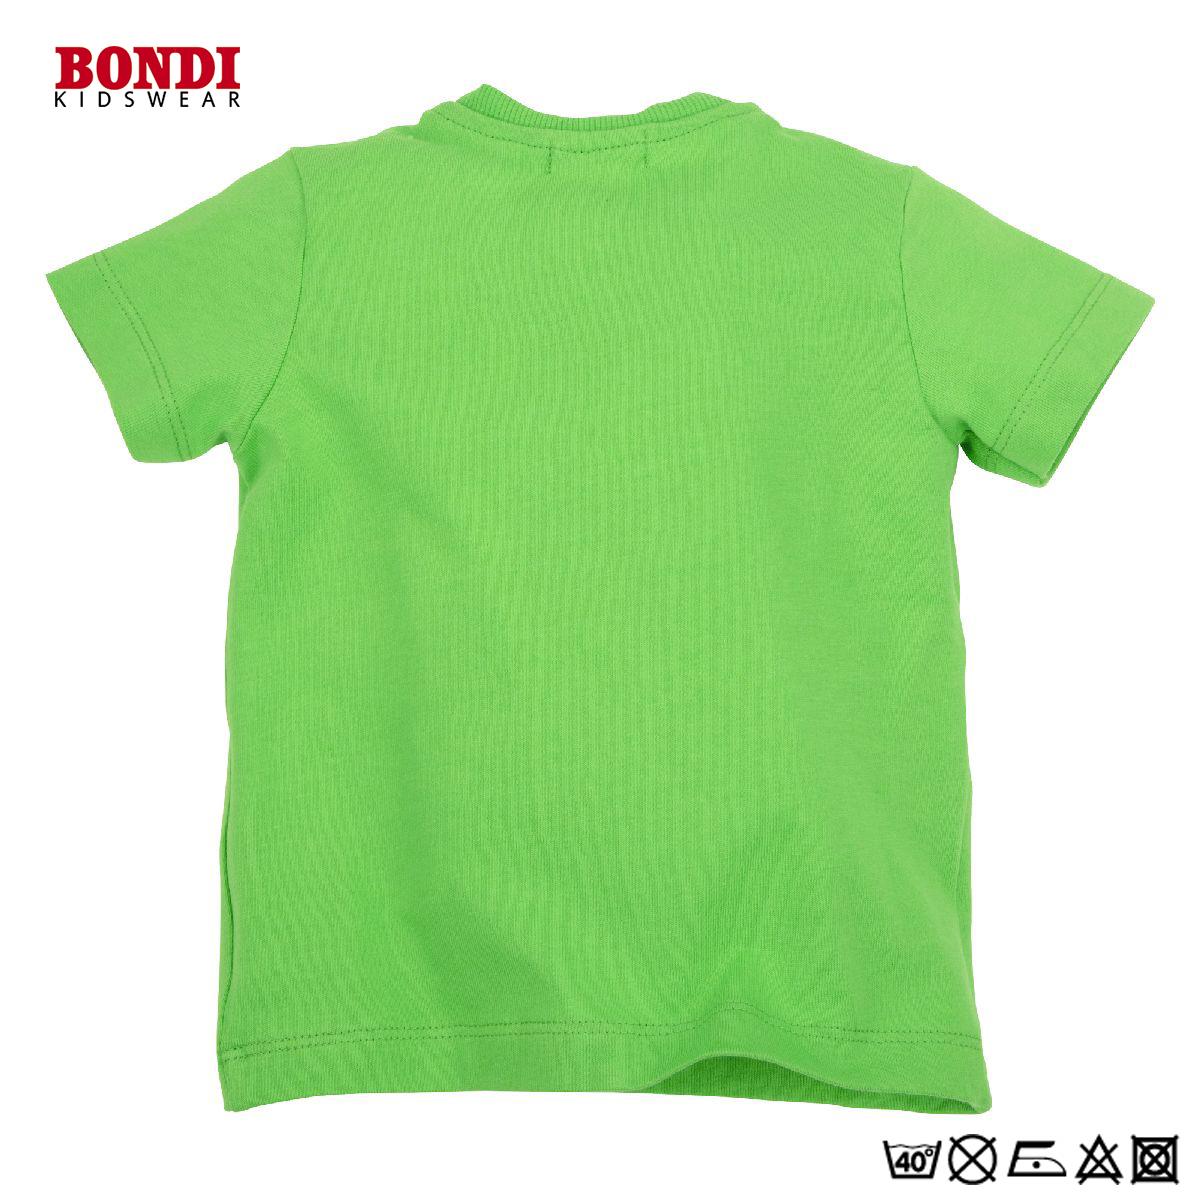 Baby T-Shirt ´Beep Beep´ grün halbärmlig 80